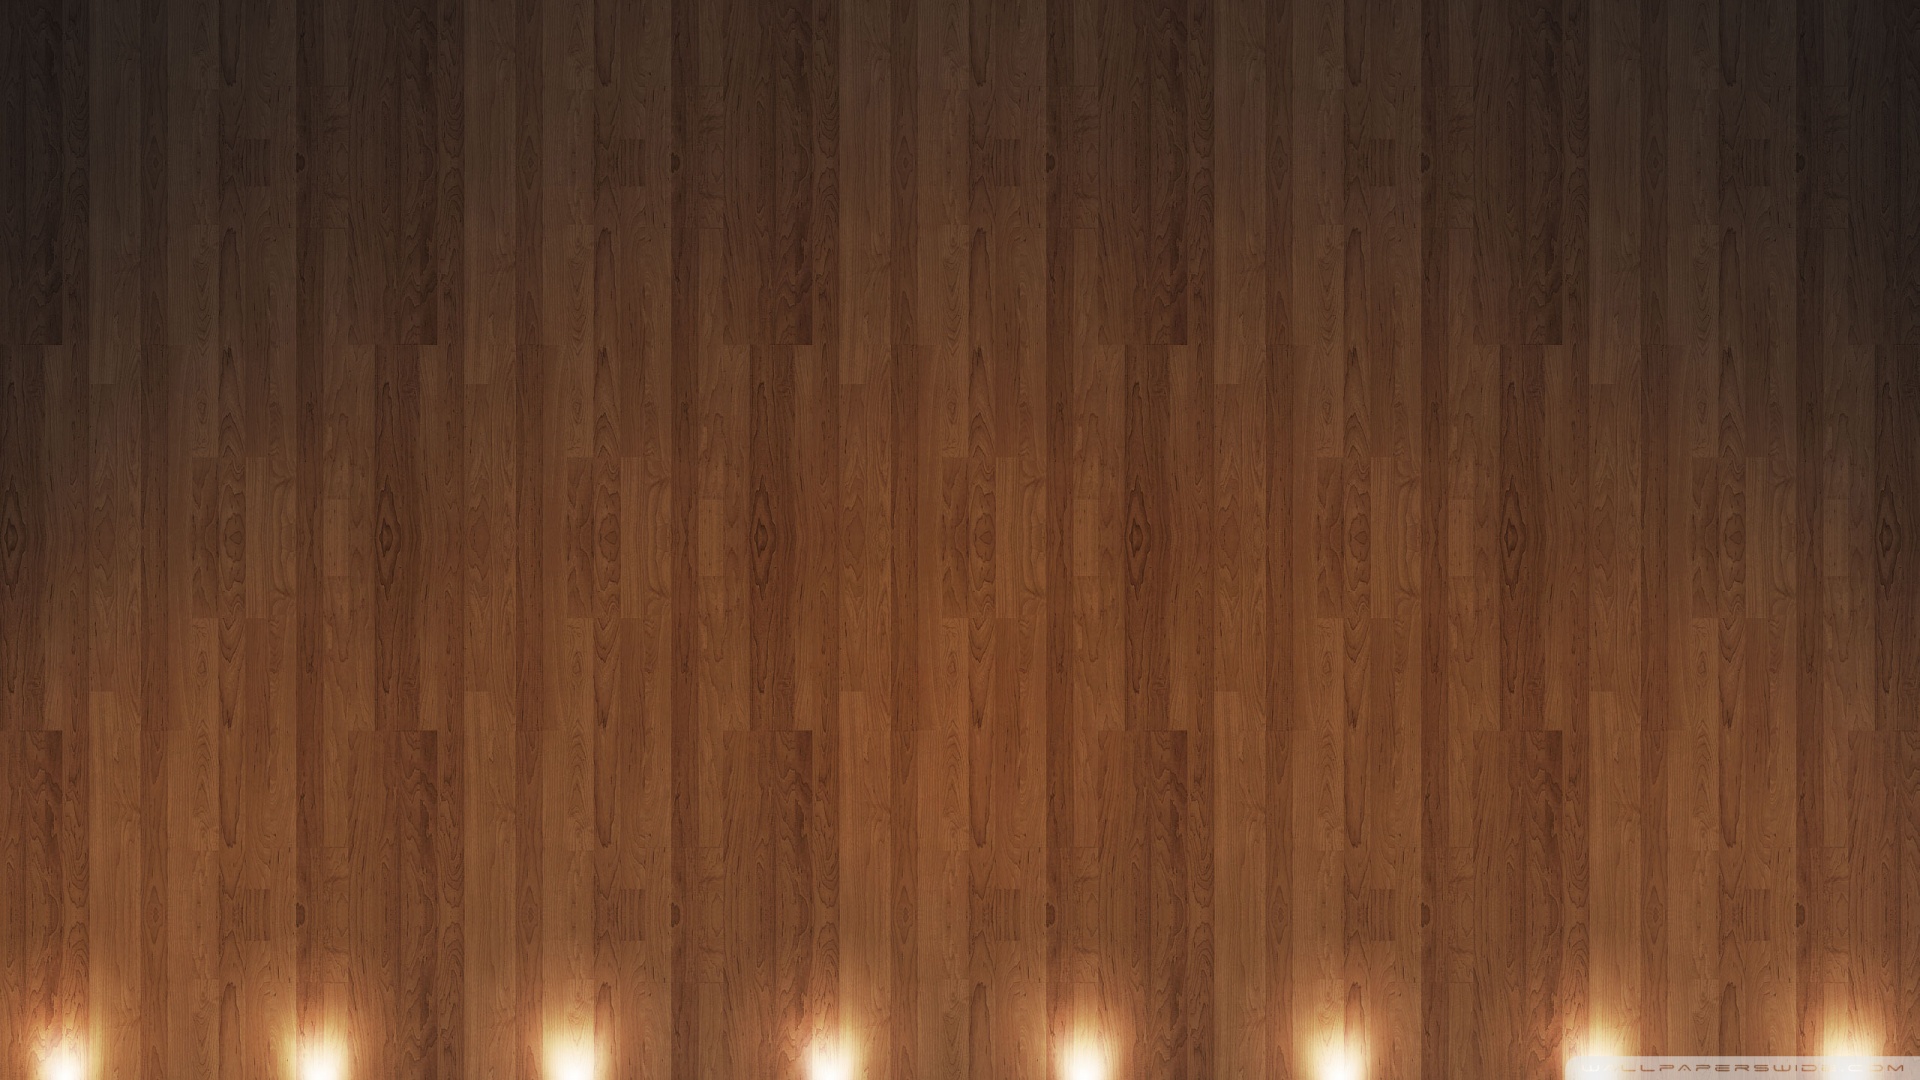 Với màu sắc ấm áp và độ bền cao, nền gỗ được ưa chuộng trong thiết kế nội thất và trở thành một phần không thể thiếu trong không gian sống của bạn. Hãy xem hình ảnh liên quan để khám phá thêm những bí quyết sử dụng nền gỗ một cách đẹp mắt và hiệu quả.